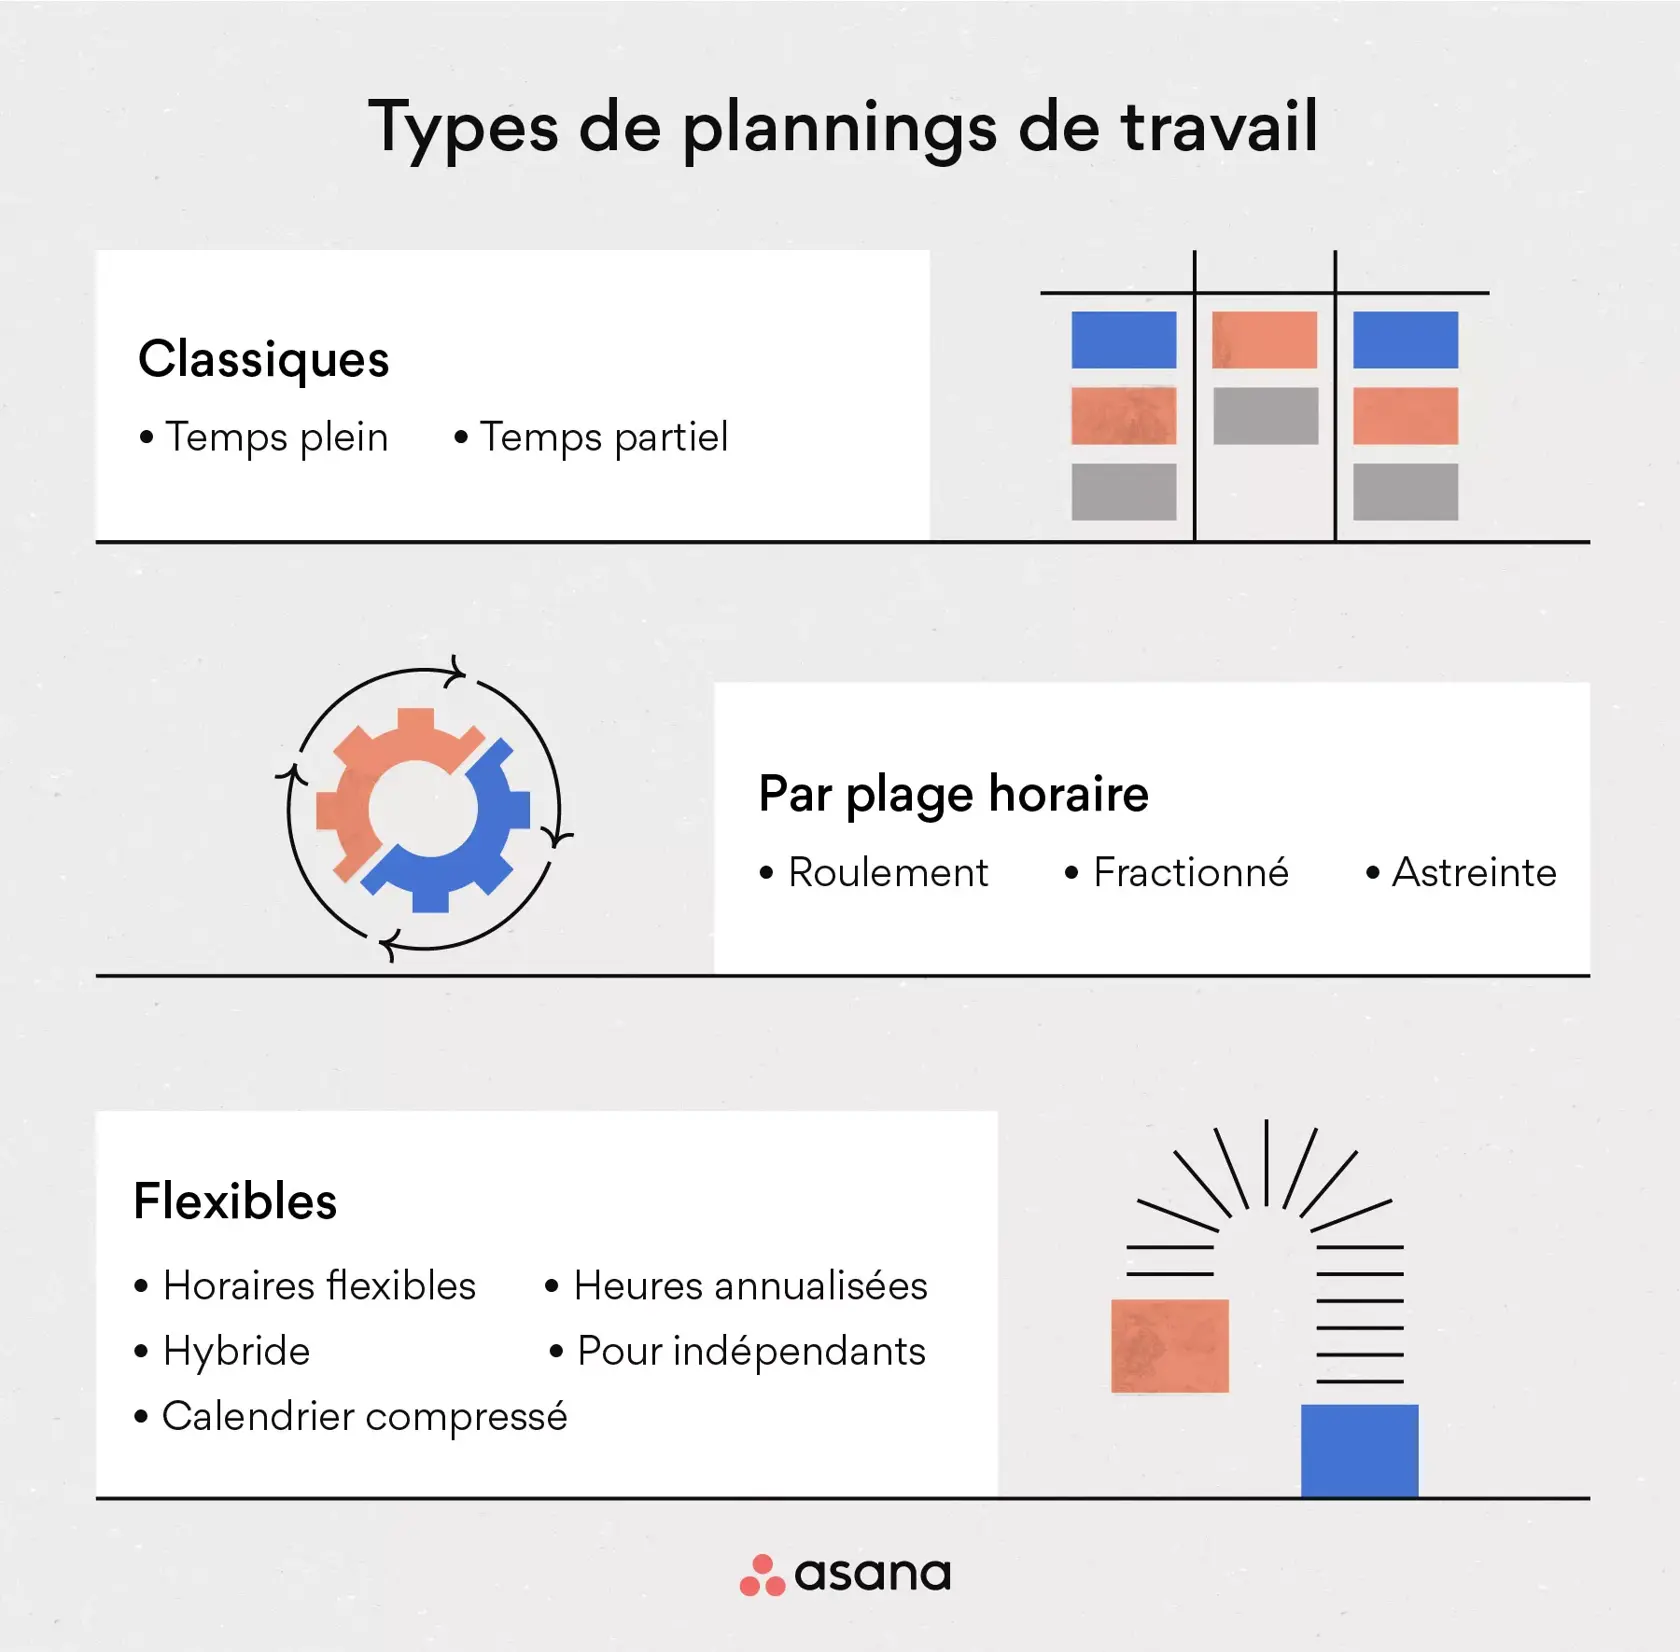 [Illustration intégrée] Types de plannings de travail (infographie)